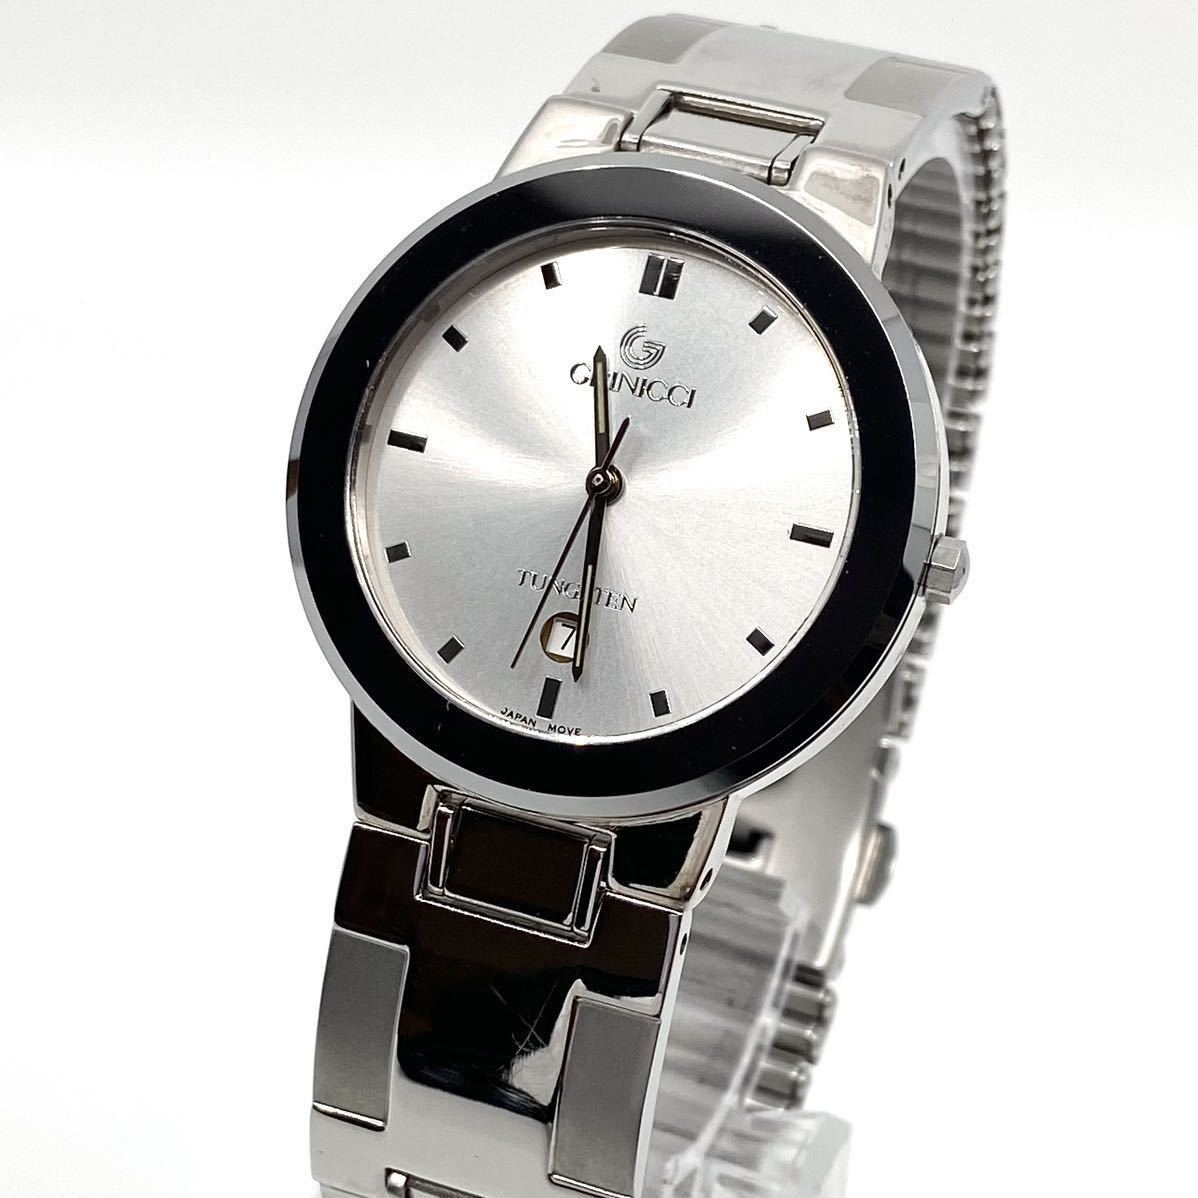 箱付き 美品 GRINICCI 腕時計 サファイアクリスタル デイト クォーツ quartz 3針 シルバー 銀 グリニッチ Y233_画像1